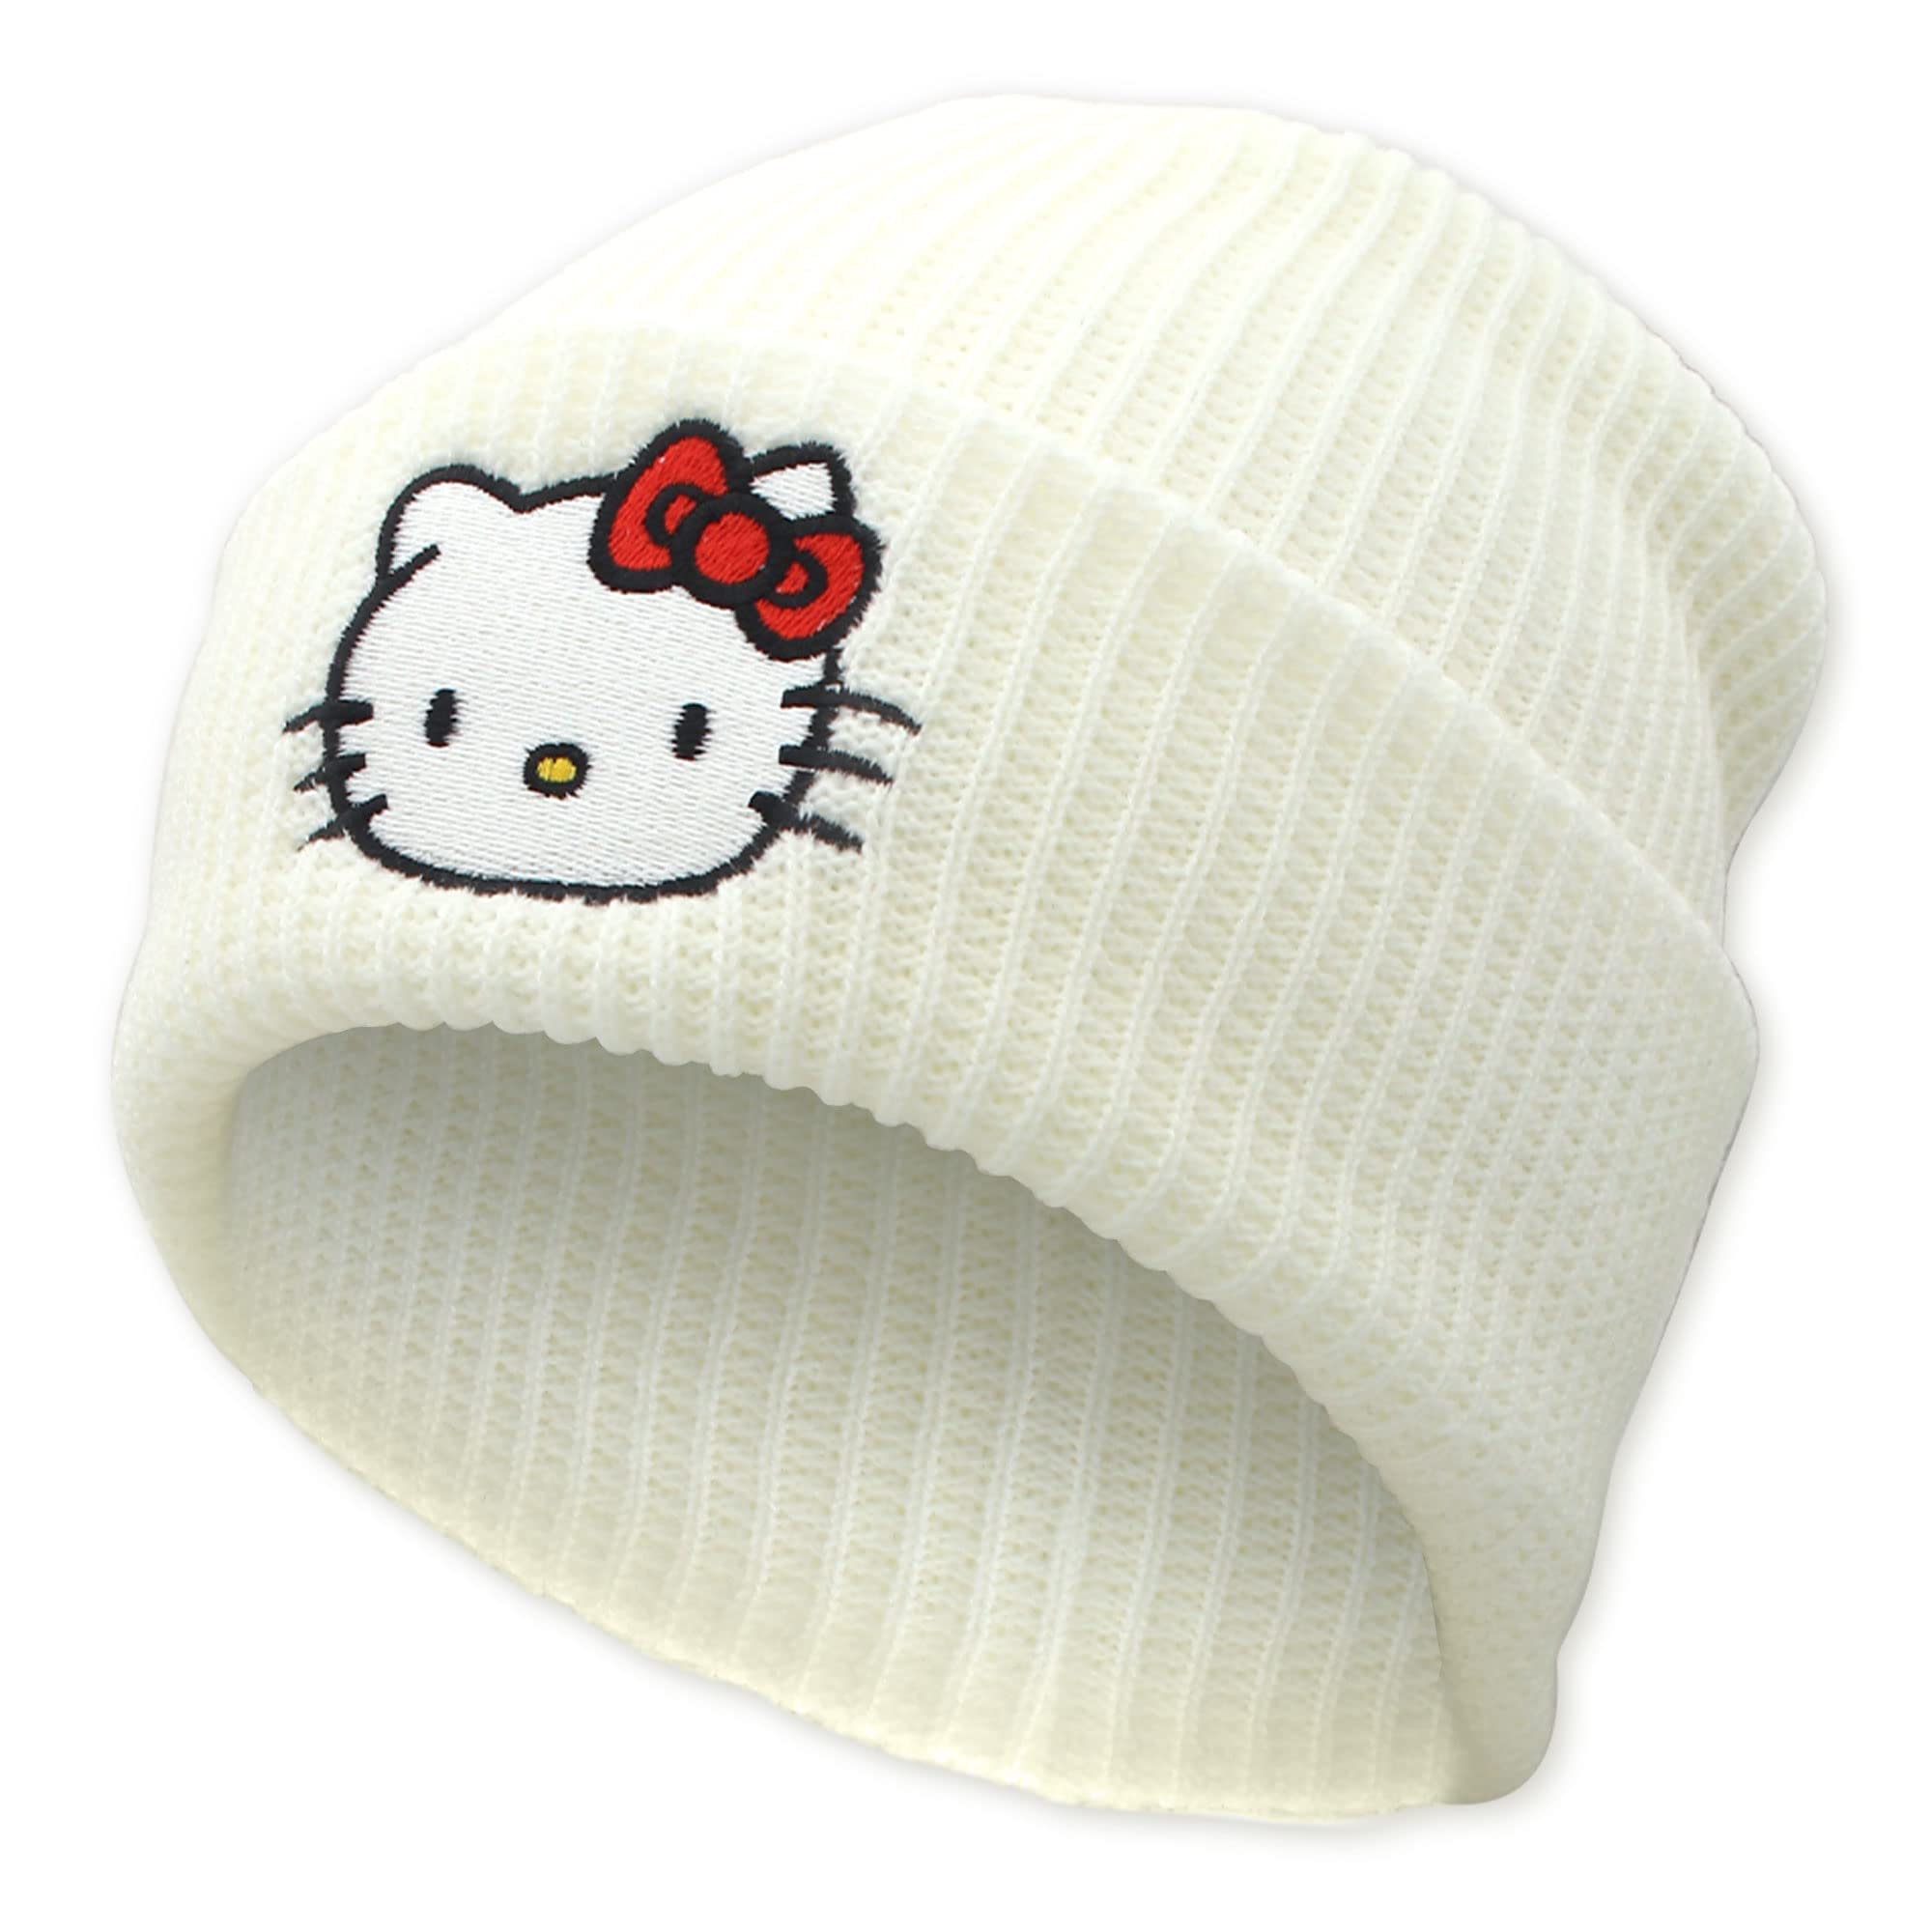 Ohjijinn Anime Beanie Knit Hats, Funny Beanie Hat Winter Skiing Slouchy  Warm Cap, Soft Headwear for Men Women Black